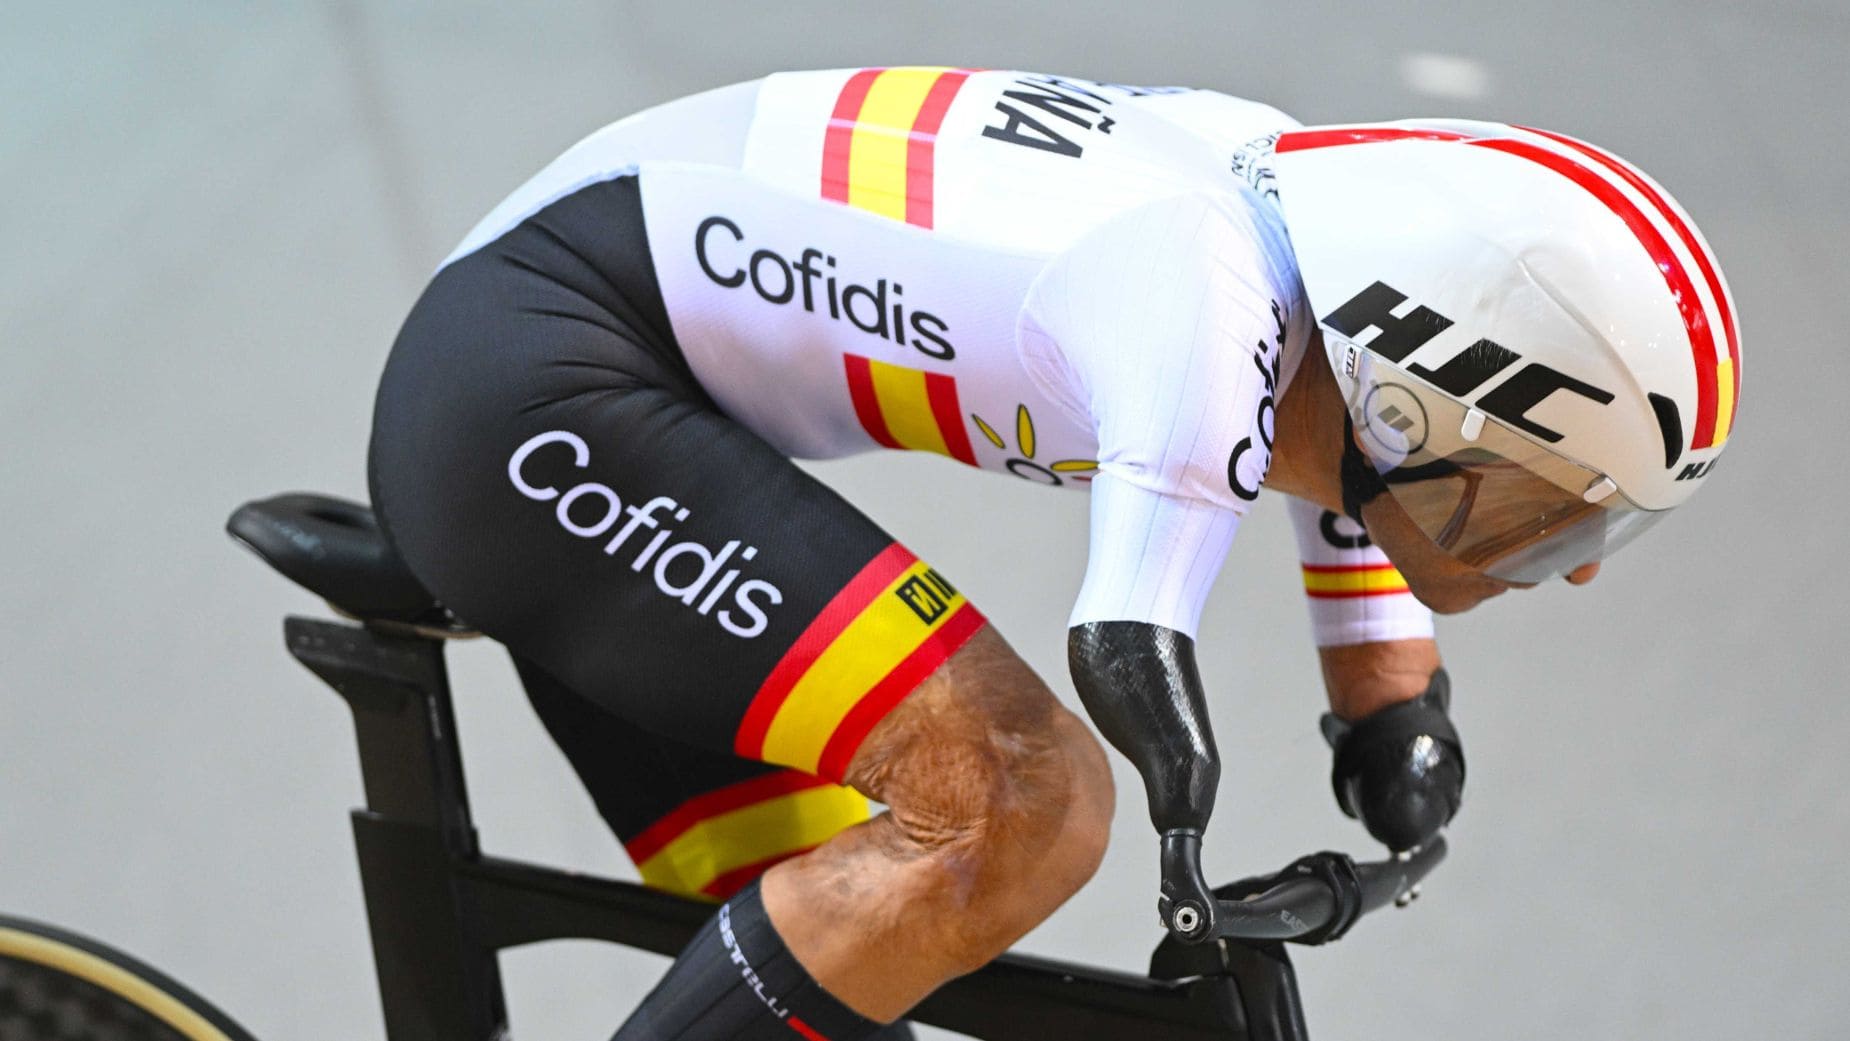 Ricardo Ten será el referente de España en el Mundial de Ciclismo Paralímpico en pista